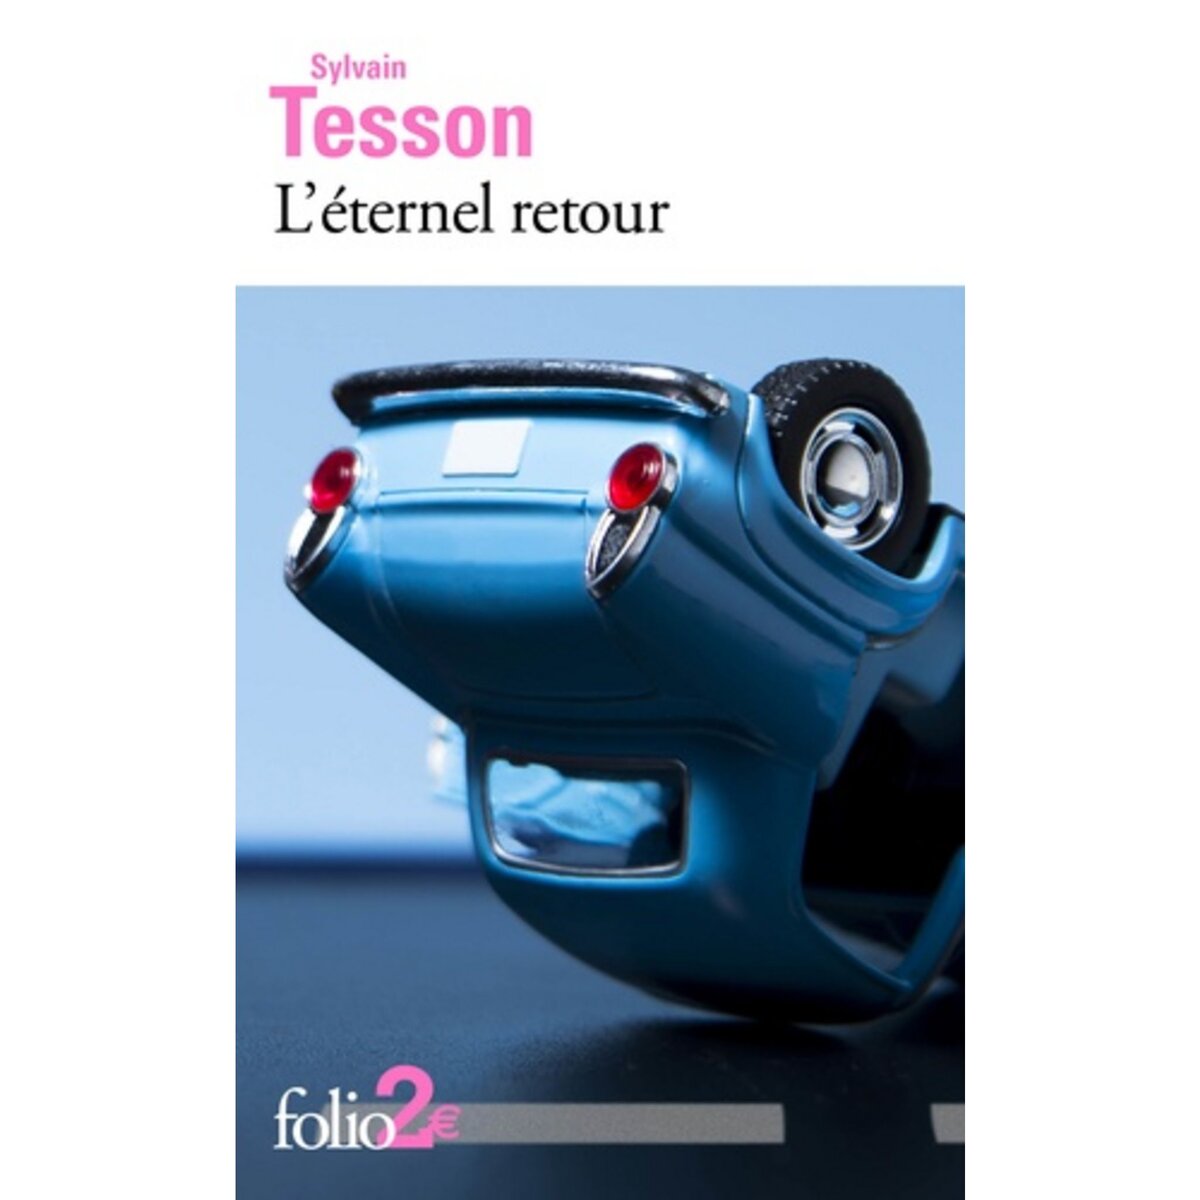  L'ETERNEL RETOUR, Tesson Sylvain